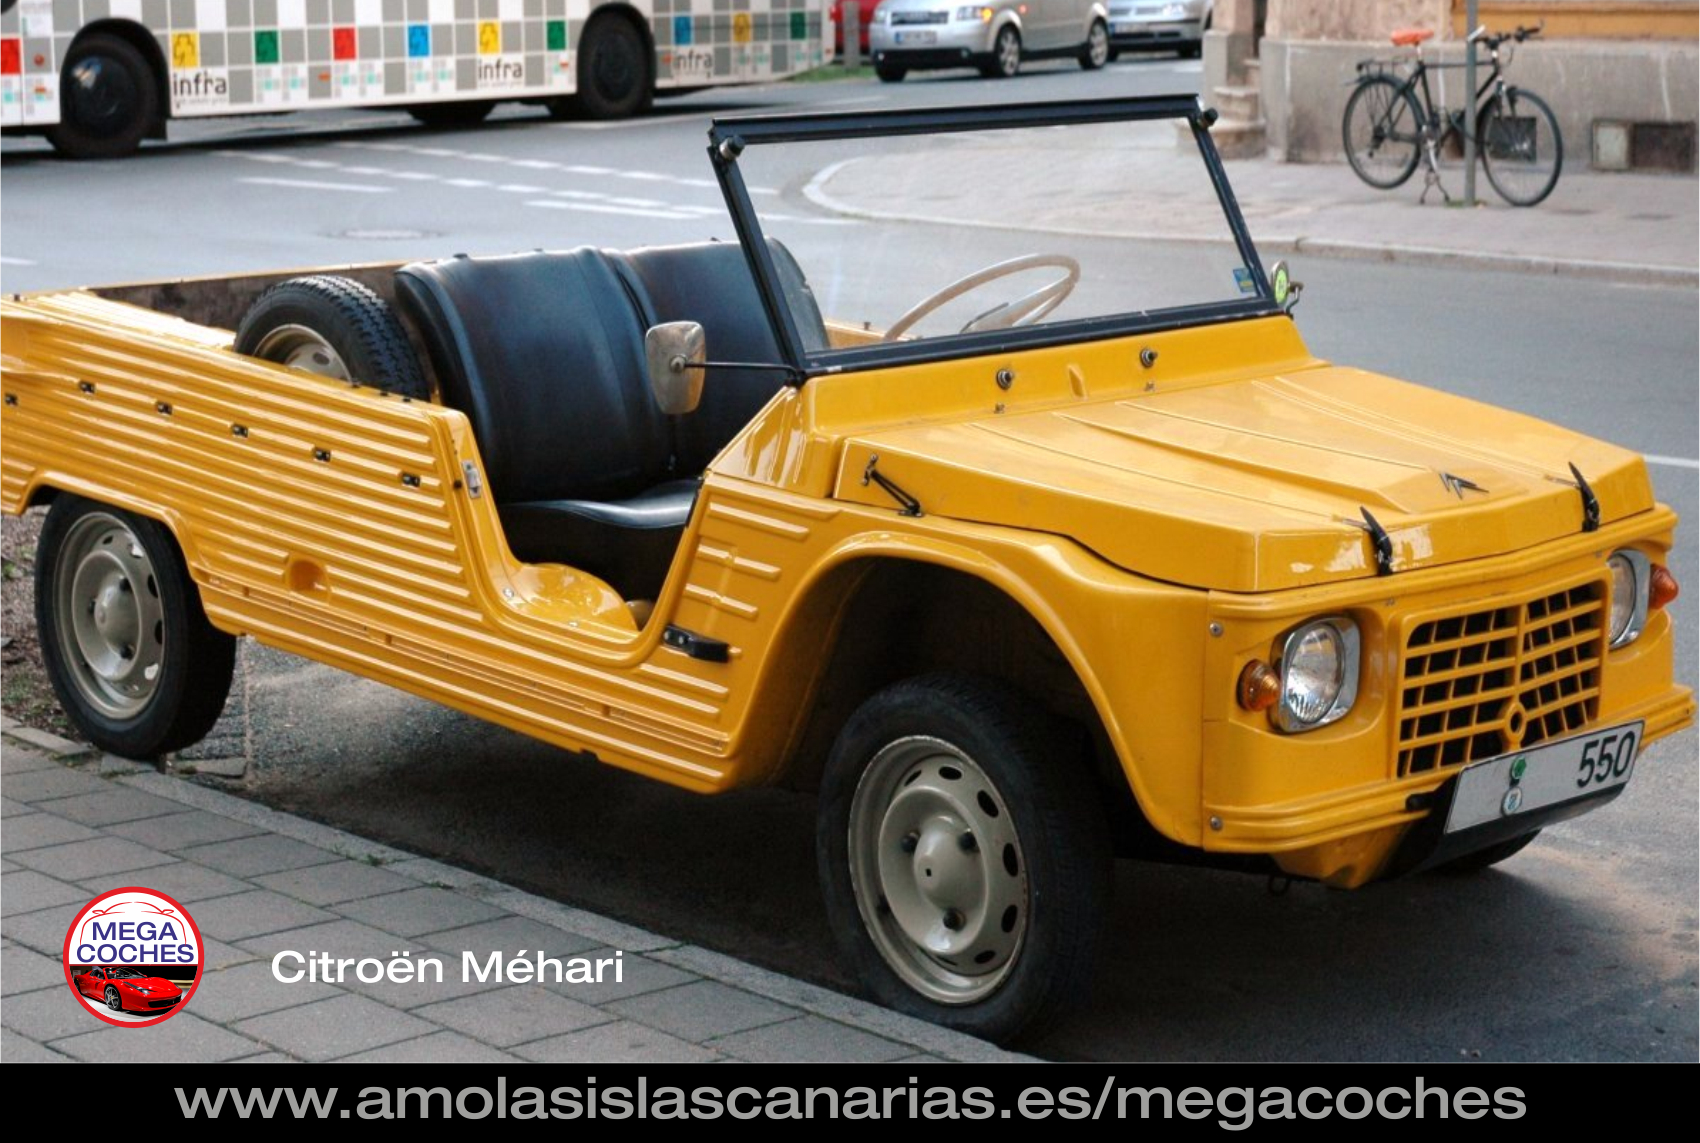 Citroen Mehari foto coche antiguo deportivo y de lujo mas caros del mundo vips Tenerife Islas Canarias